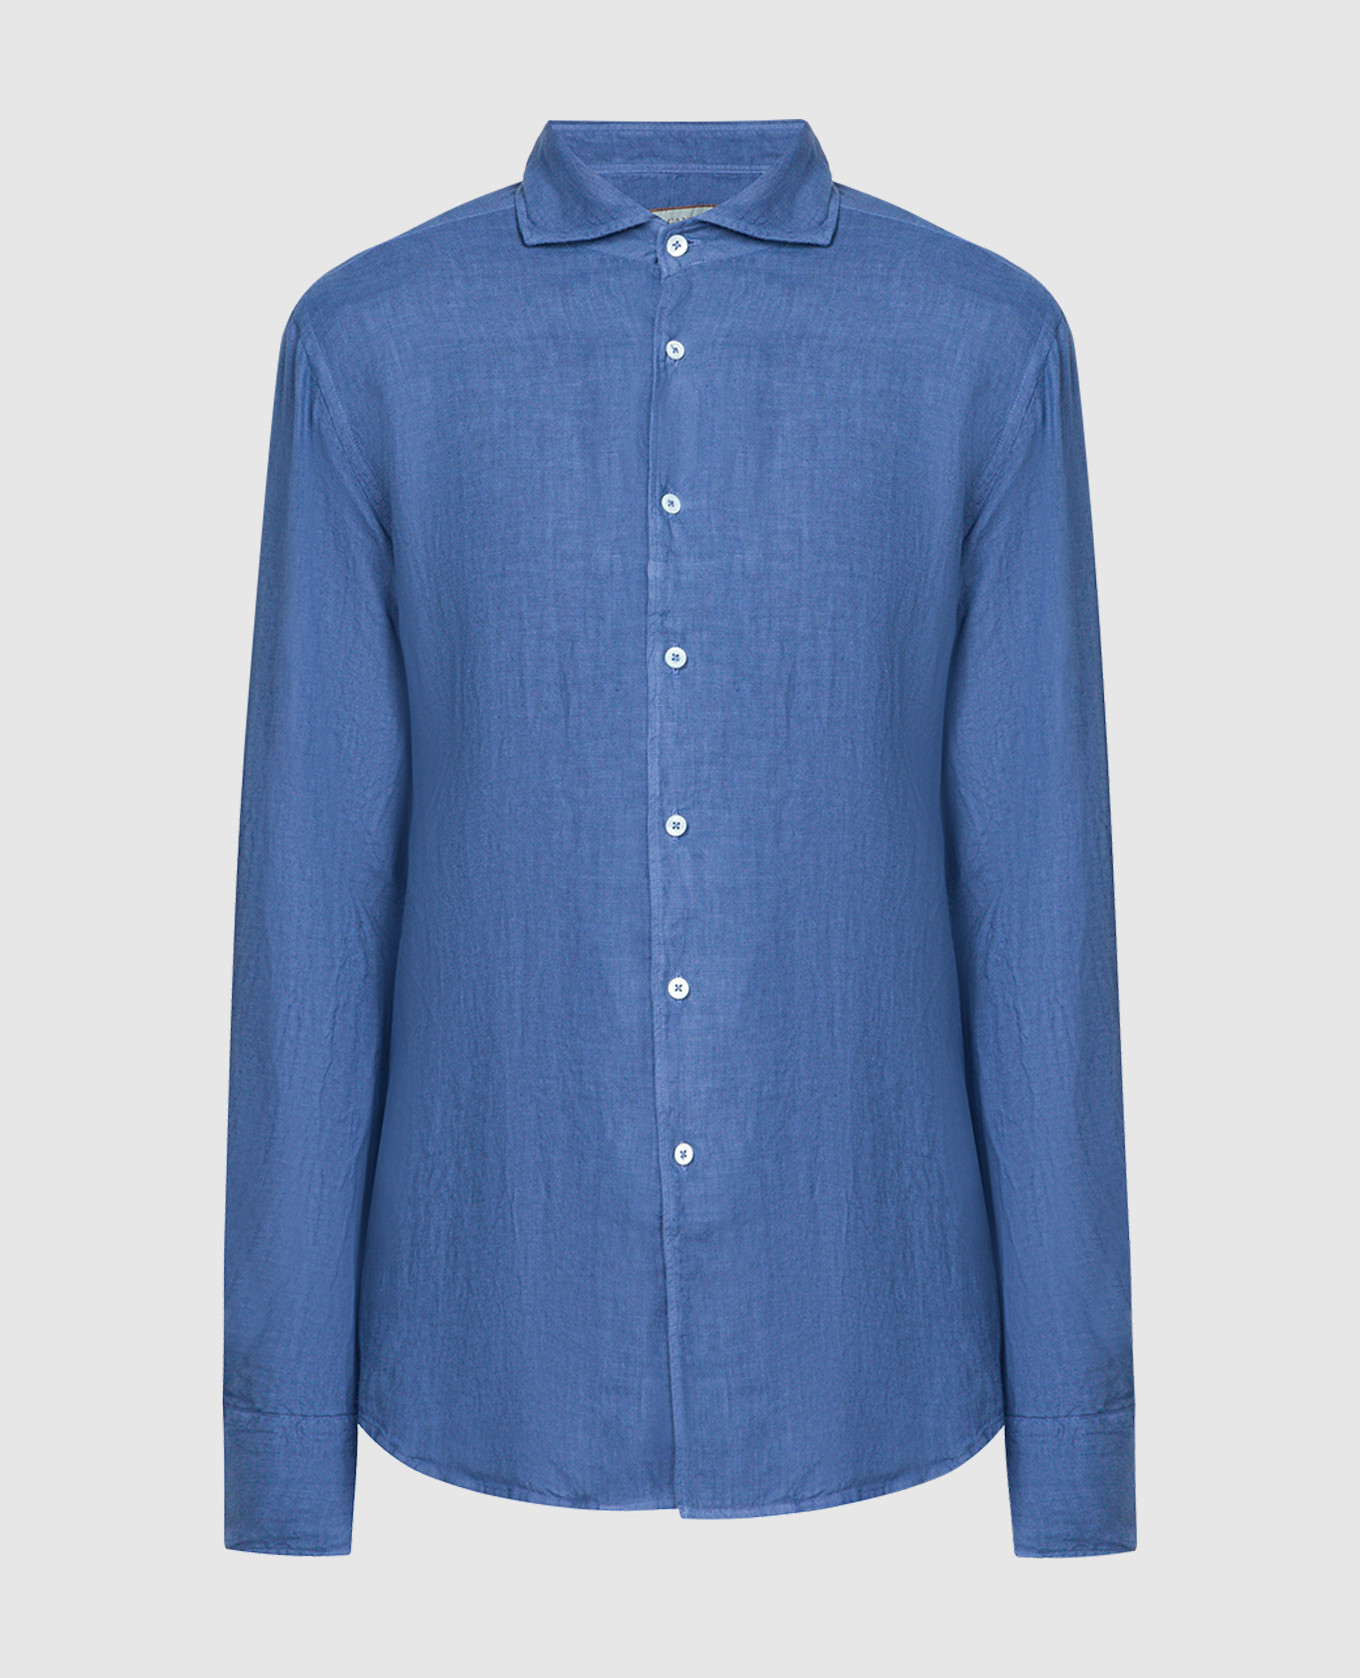 Blue straight-cut shirt made of linen